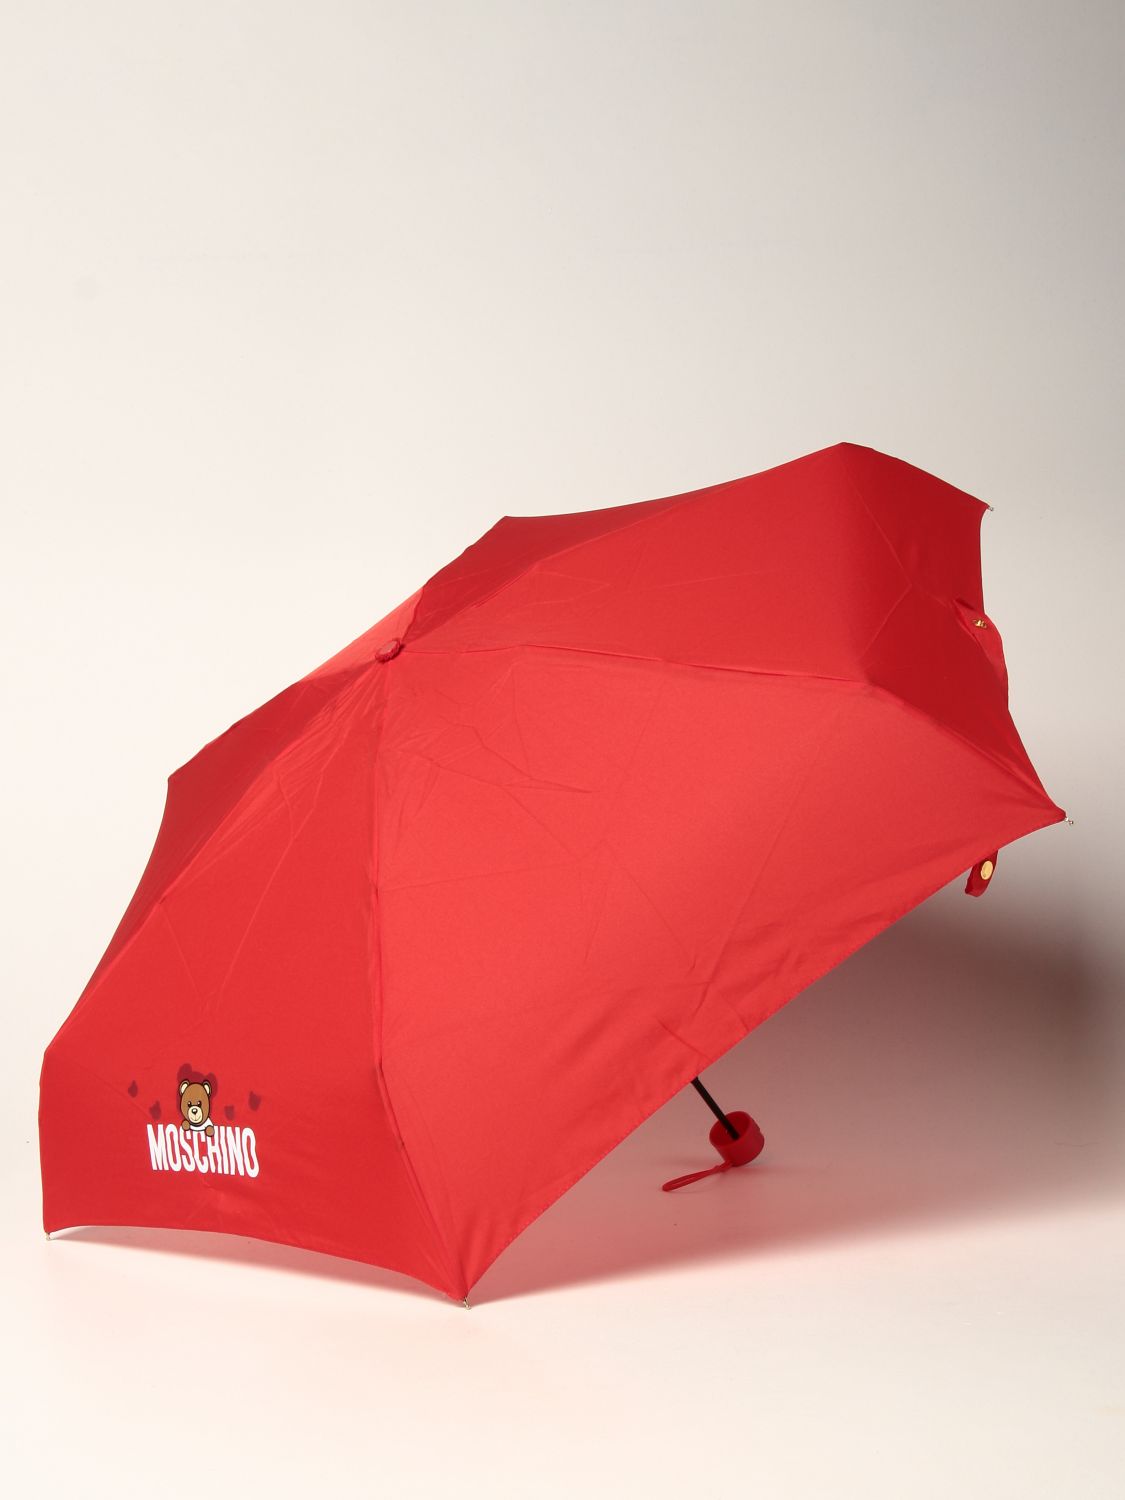 Moschino Regenschirm mit Teddy in Rot Damen Accessoires Regenschirme 